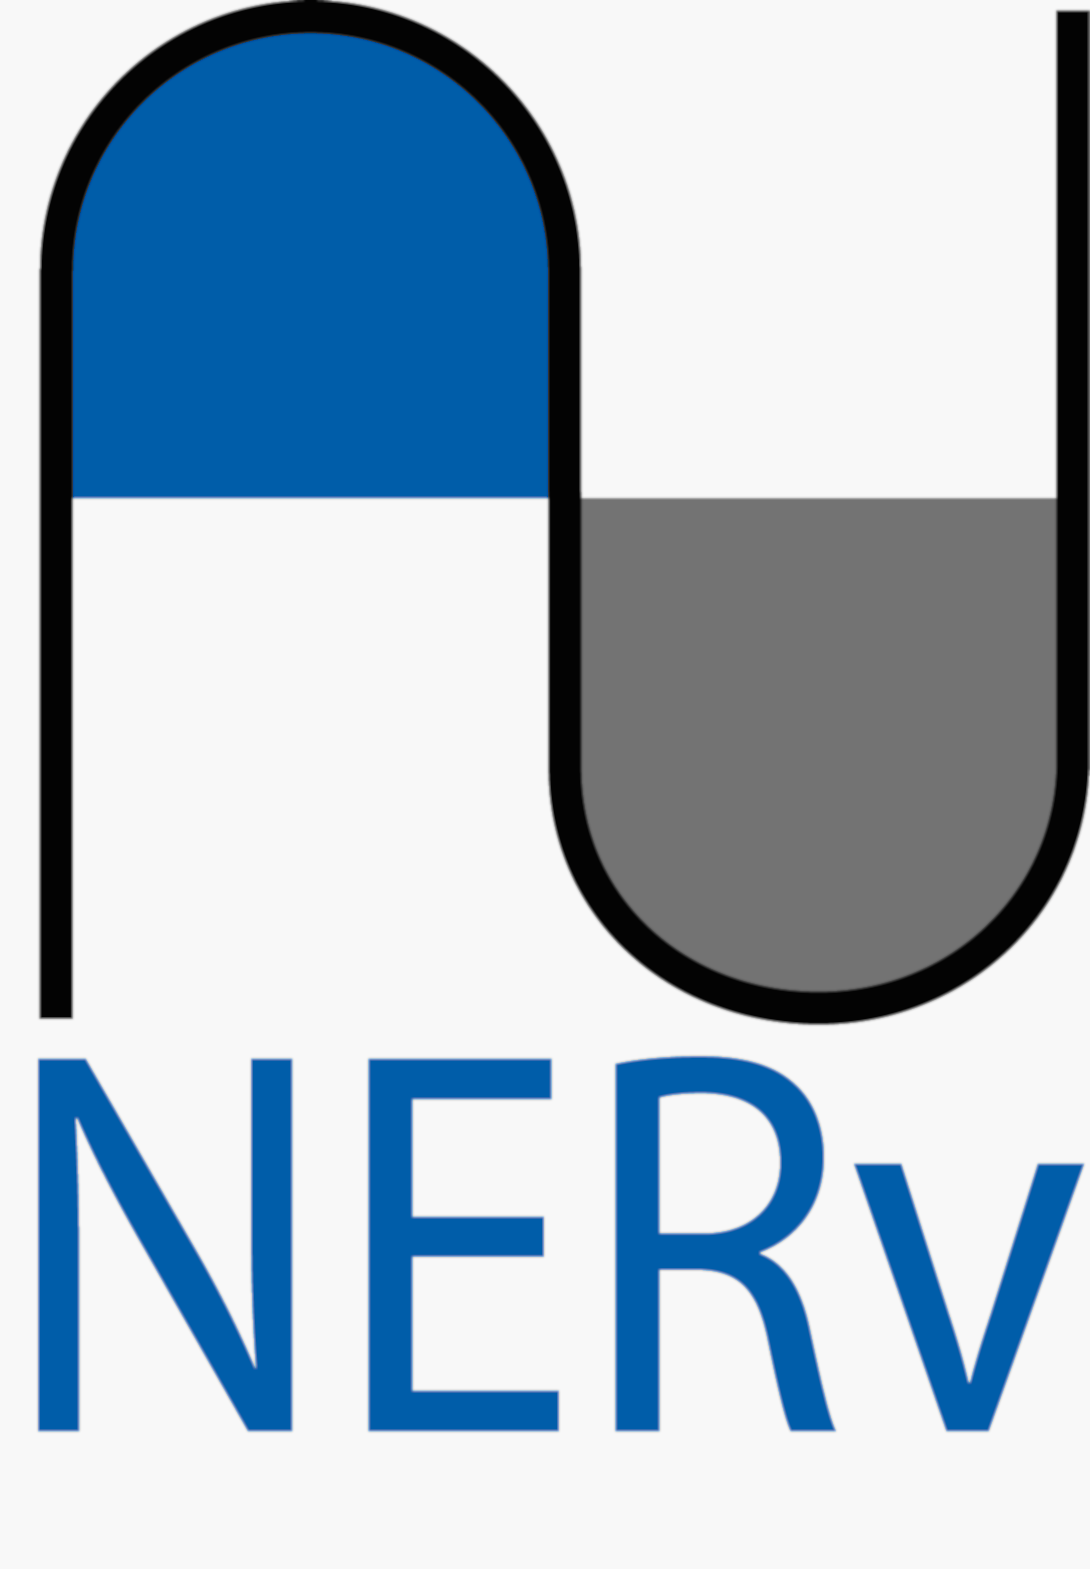 NERv logo.